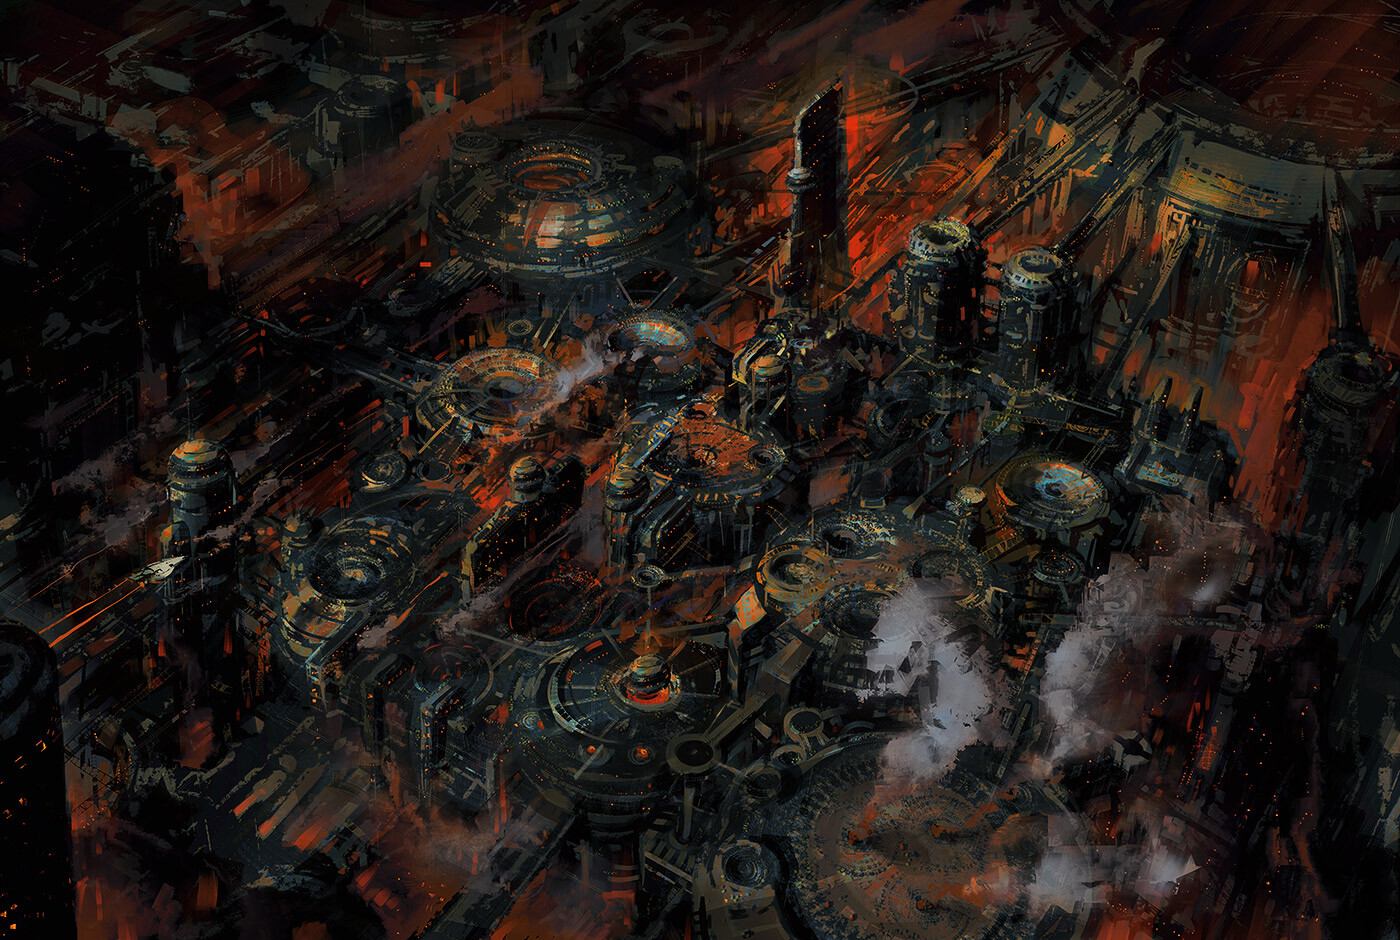 City Science Fiction Dark Black Industrial Red Fantasy Art 1400x940